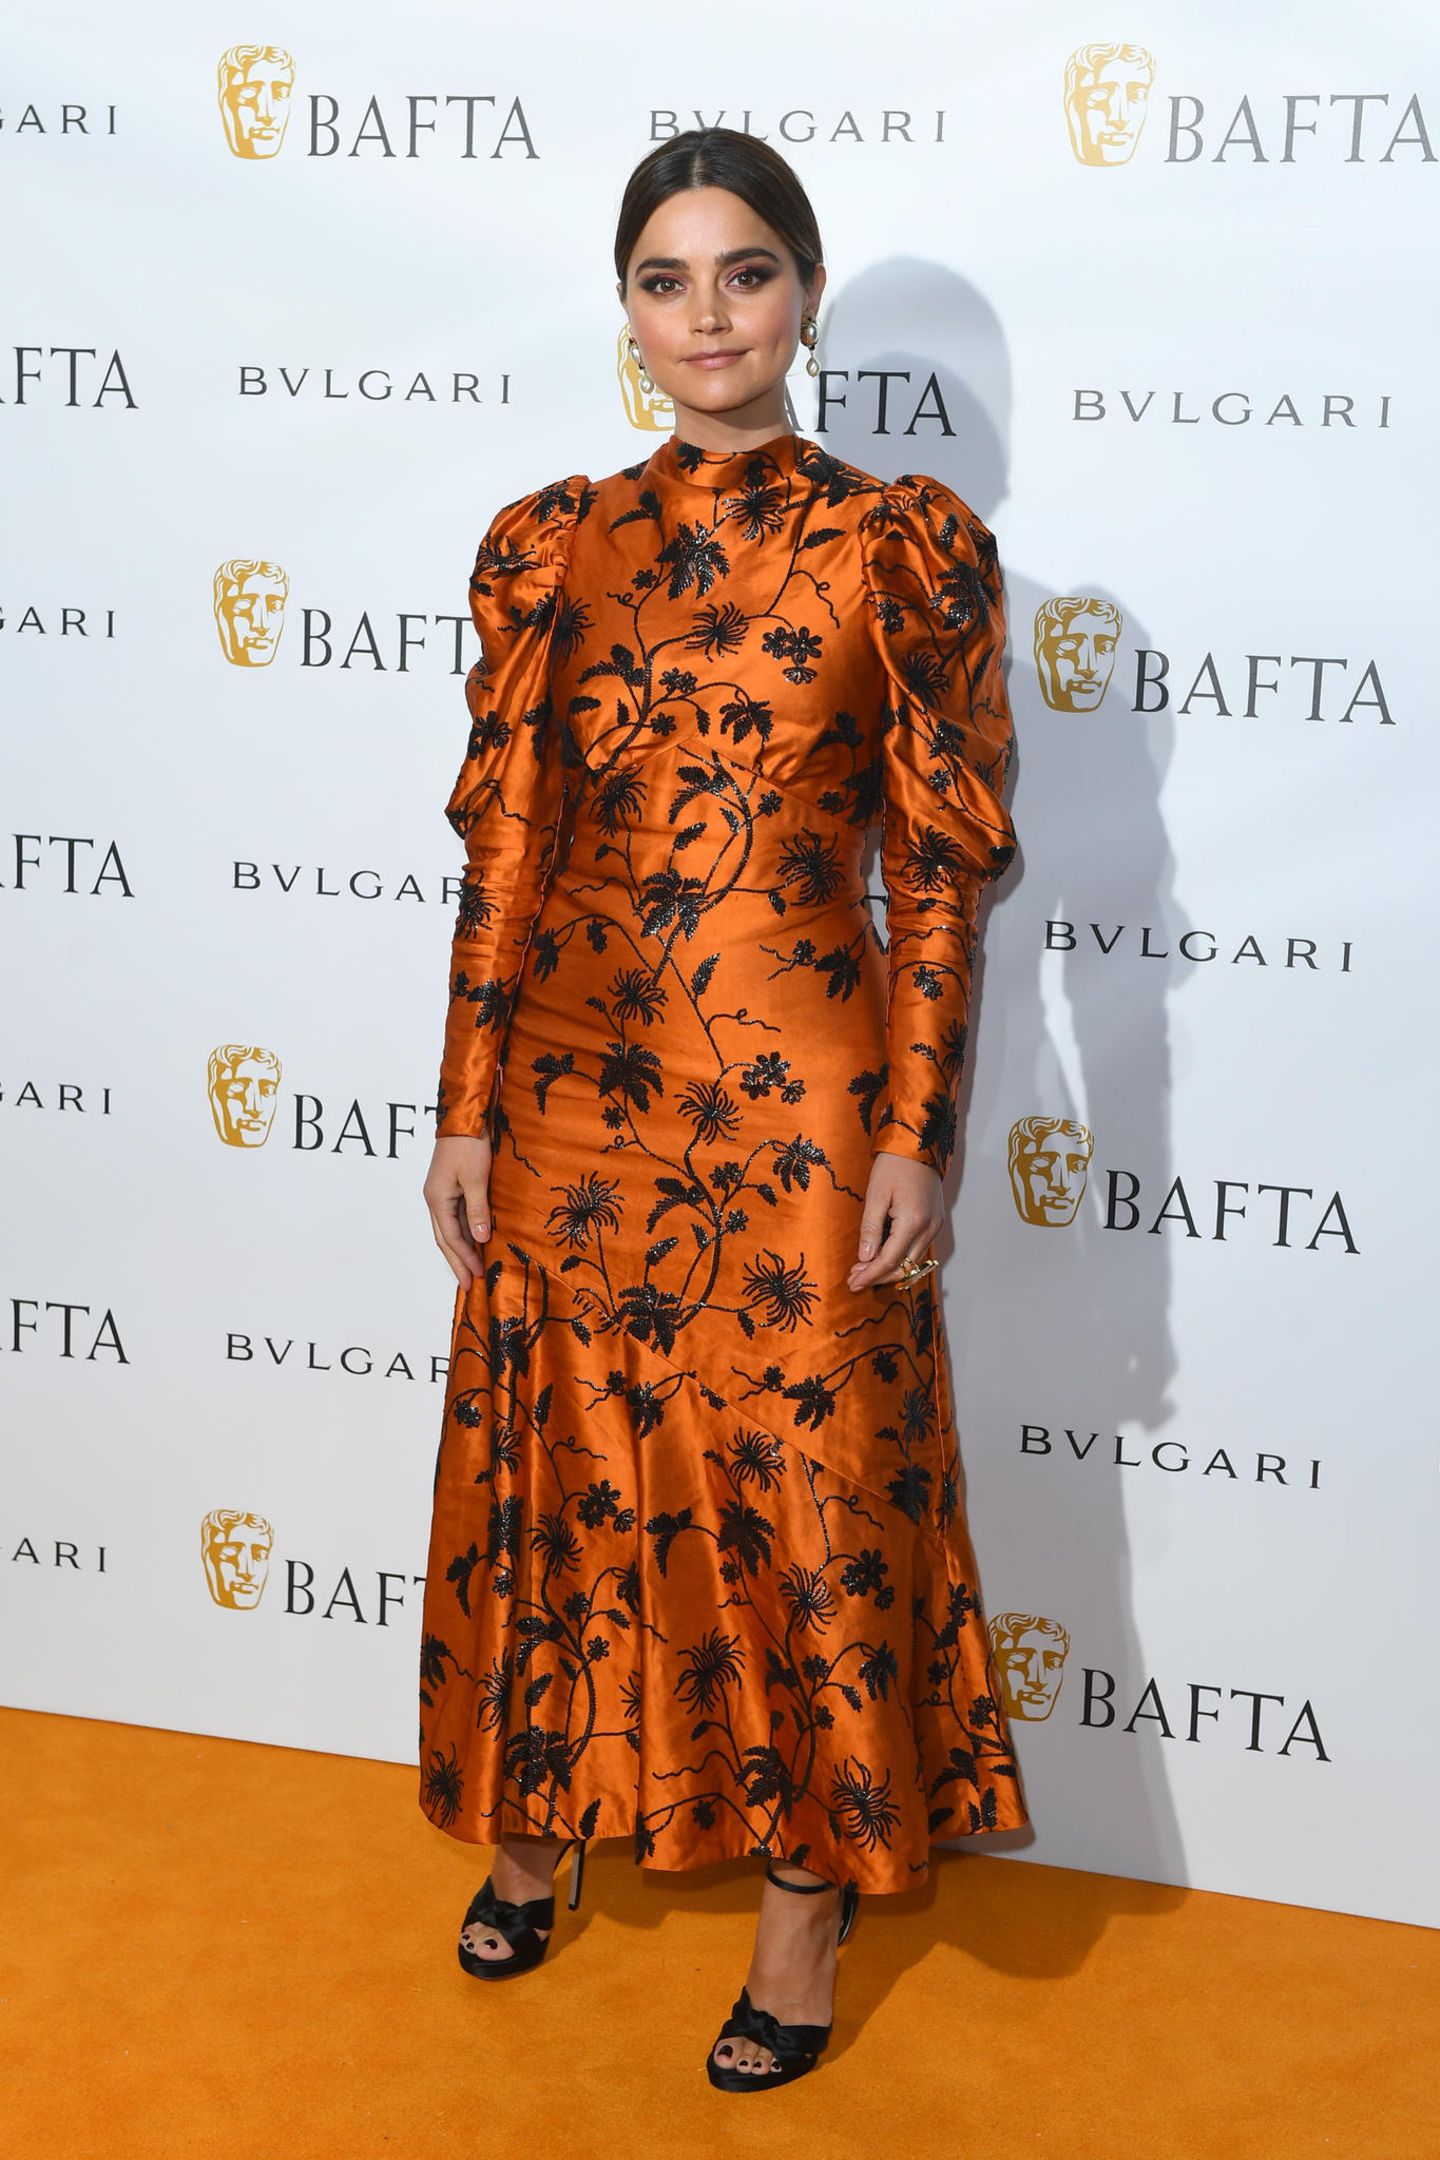 Ob das Zufall ist? Passend zum orangefarbenen Teppich, erscheint auch Schauspielerin Jenna Coleman in einer Robe mit Puffärmeln und Blumen-Muster in Orange. 